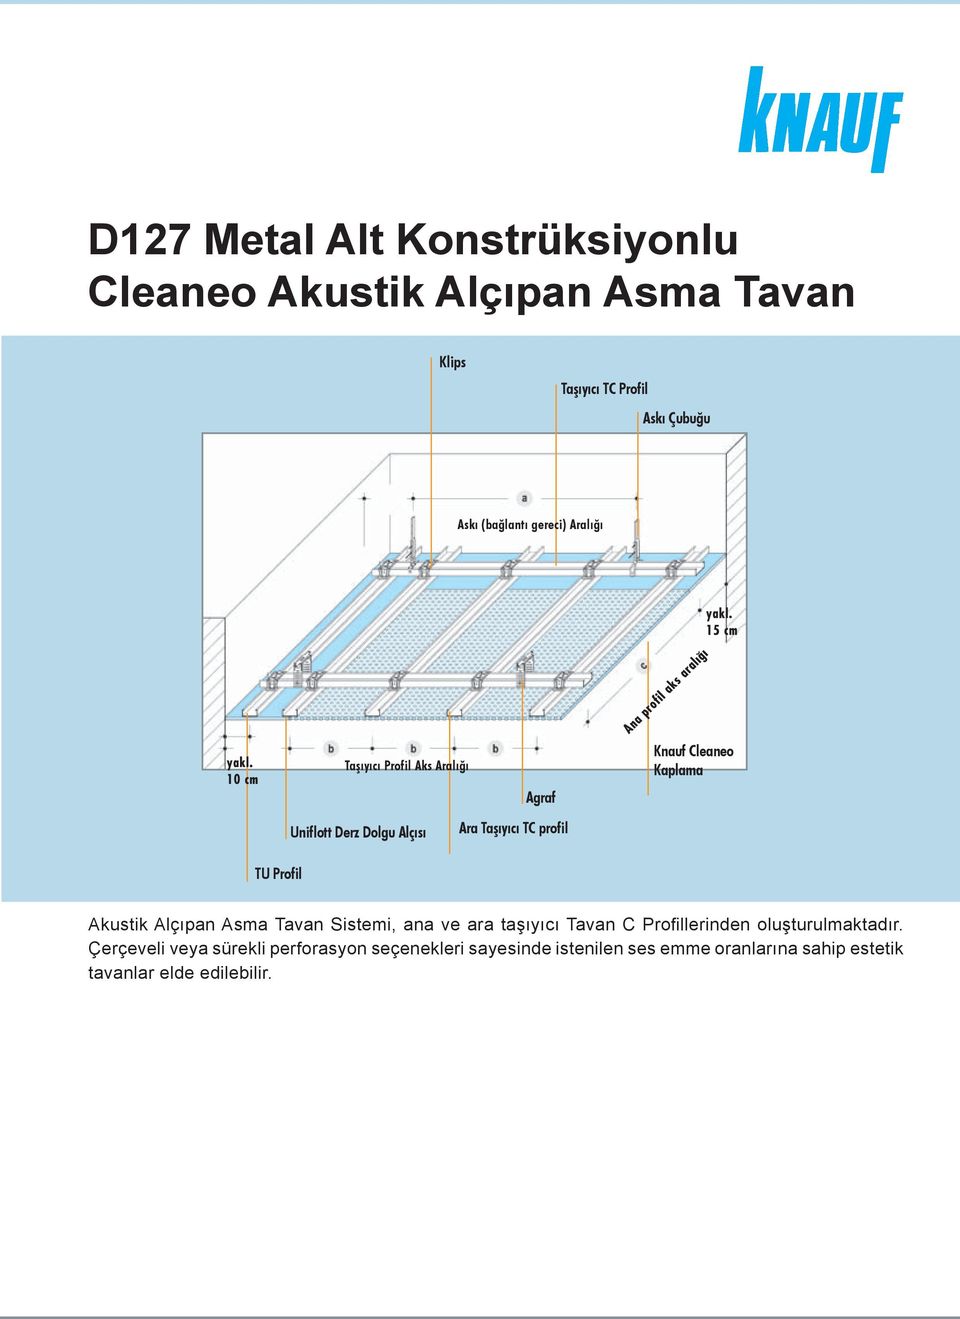 Kaplama TU Profil Akustik Alçıpan Asma Tavan Sistemi, ana ve ara taşıyıcı Tavan C Profillerinden oluşturulmaktadır.